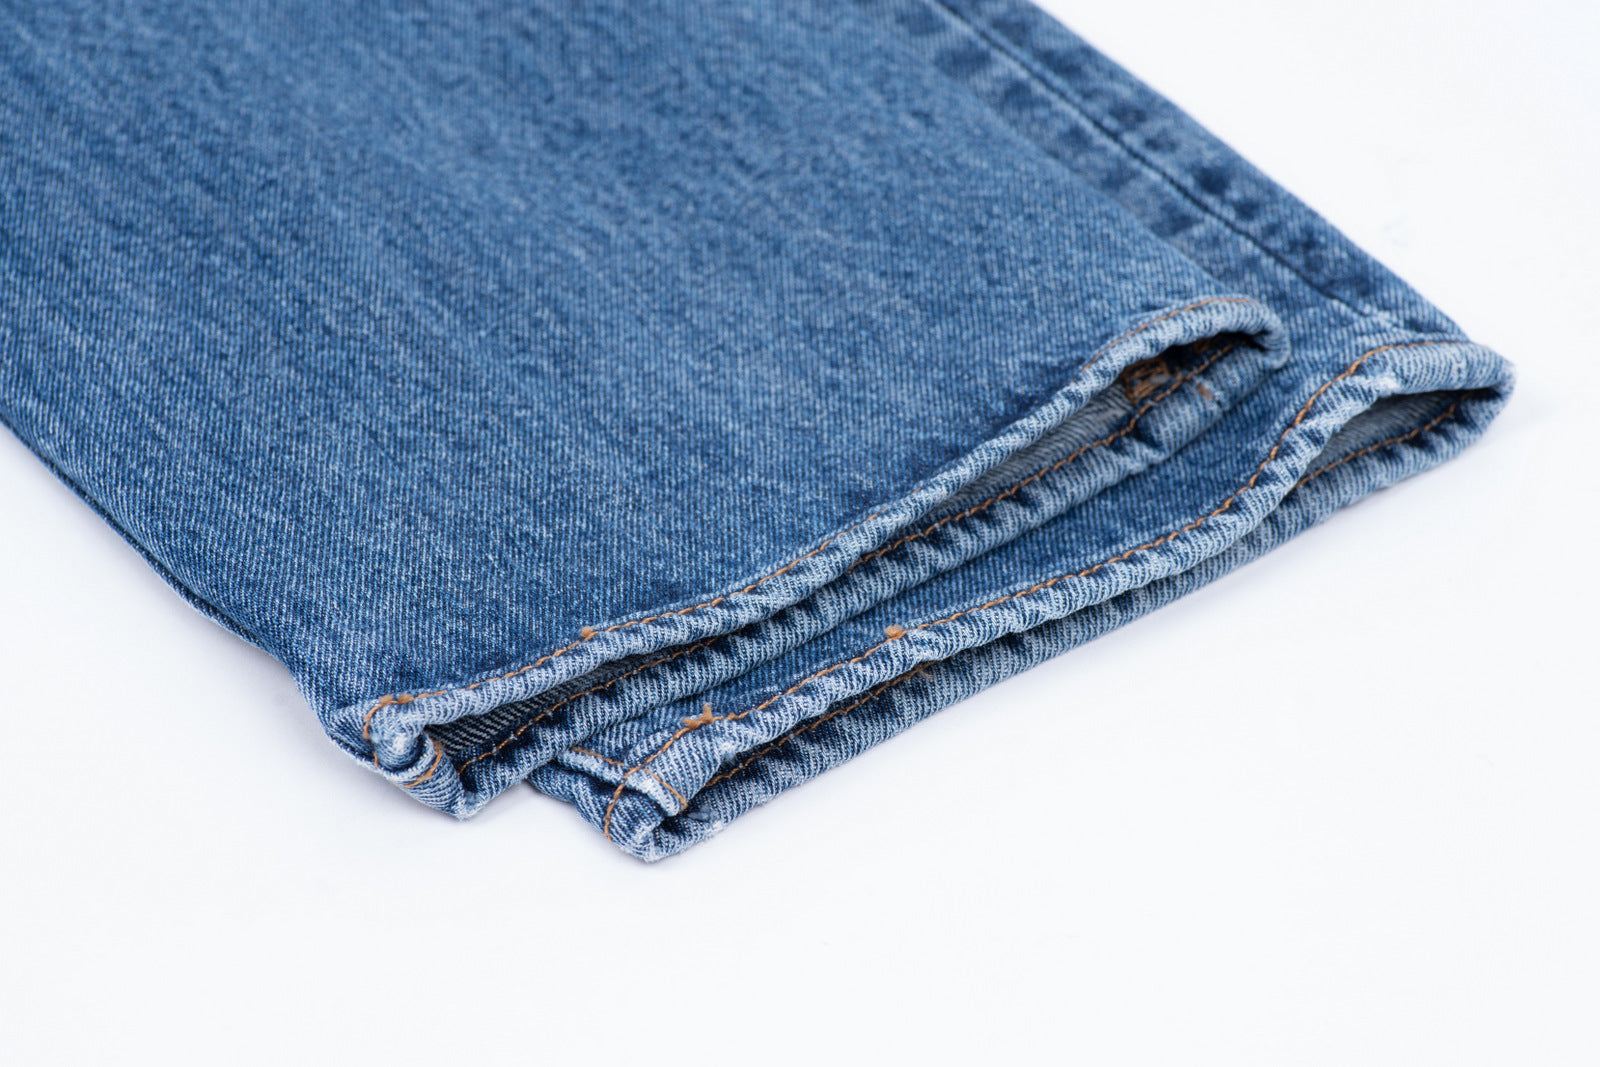 Levi’s 501 Men’s Blue Jeans, W30/L32